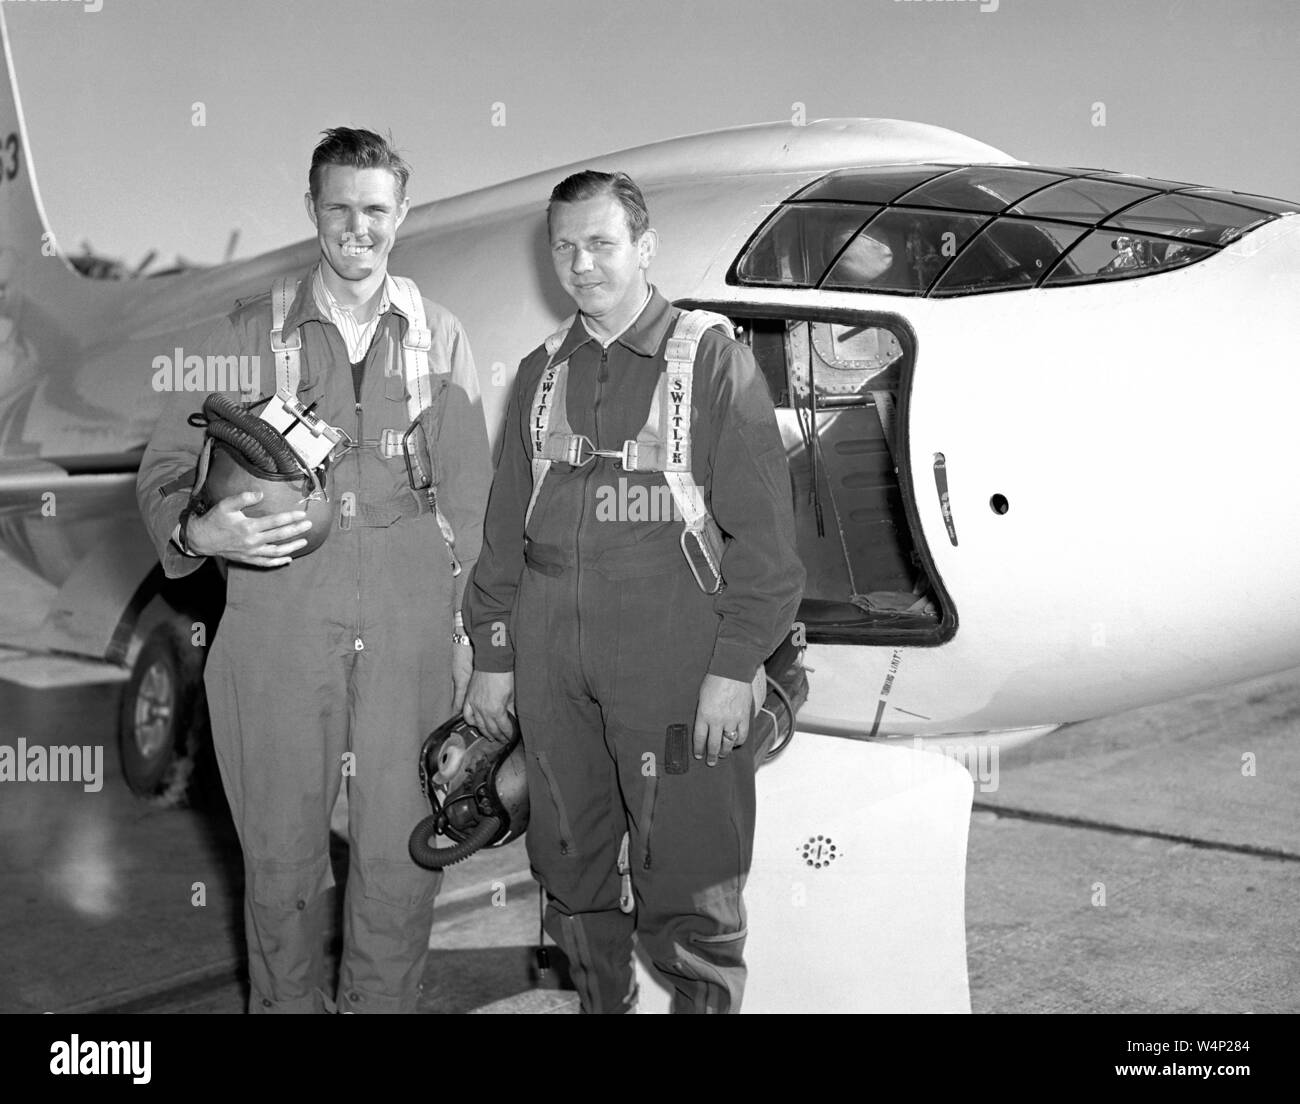 Les pilotes Robert Champine NACA et Herbert Hoover posant à côté de Bell Aircraft Corporation X-1-2, Septembre, 1949. Droit avec la permission de la National Aeronautics and Space Administration (NASA). () Banque D'Images